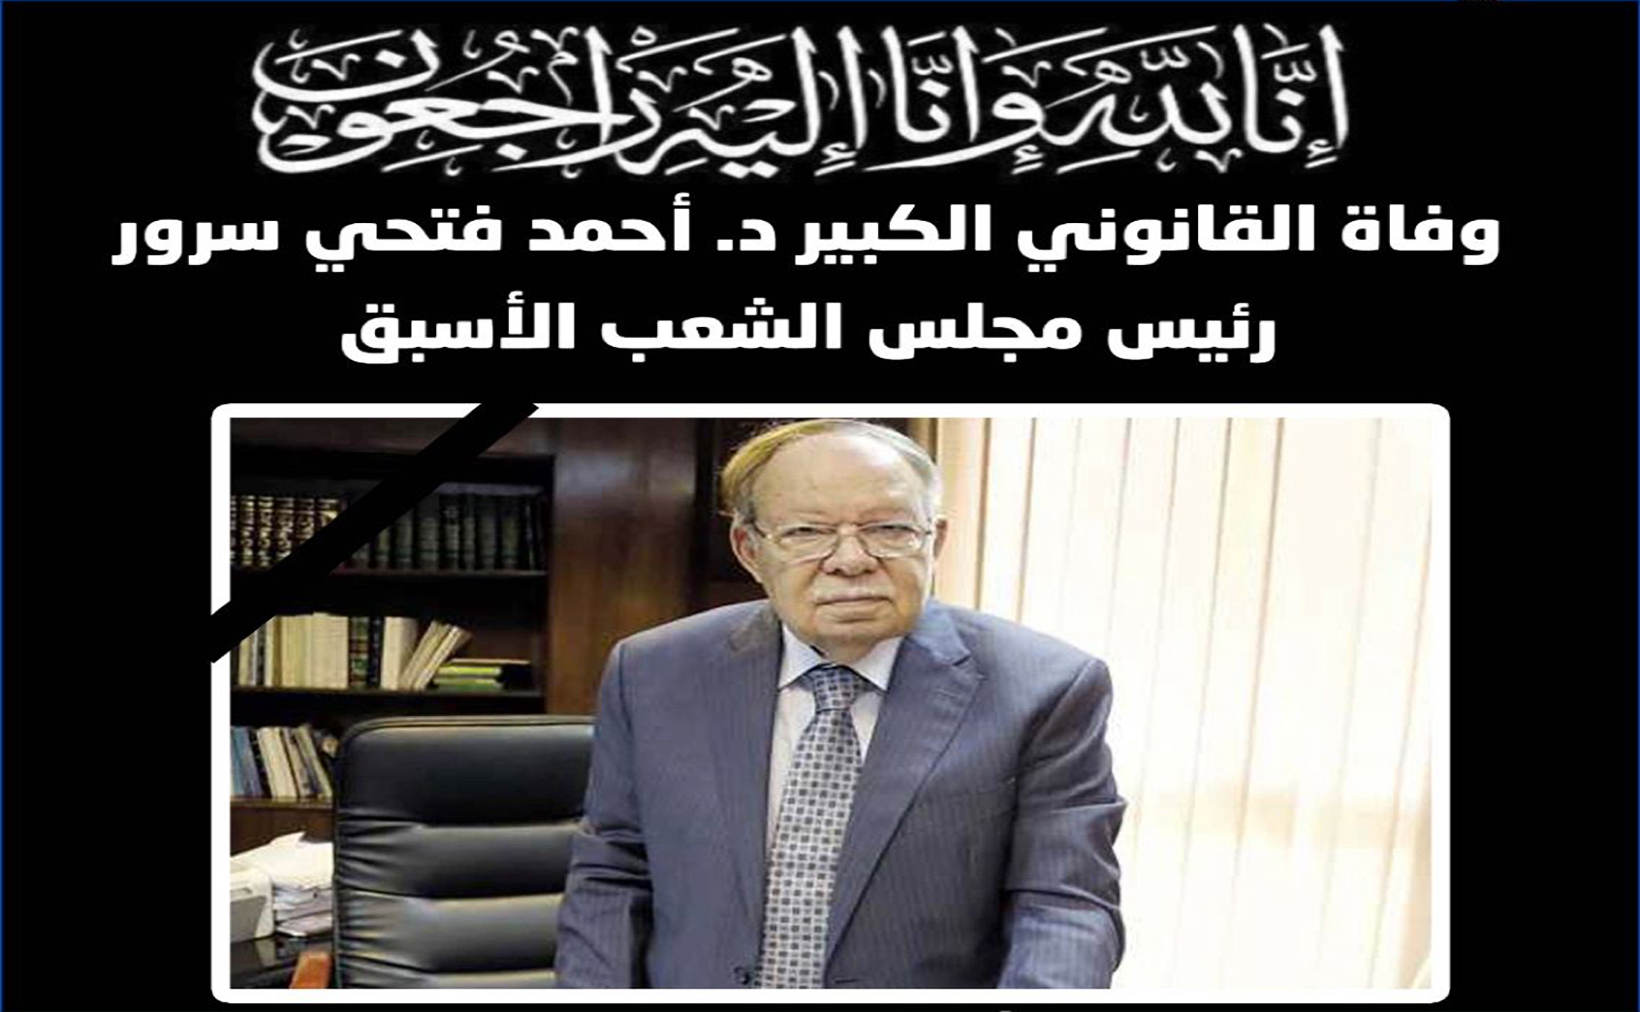 الأمين العام للاتحاد يعزي في وفاة رئيس البرلمان المصري الأسبق